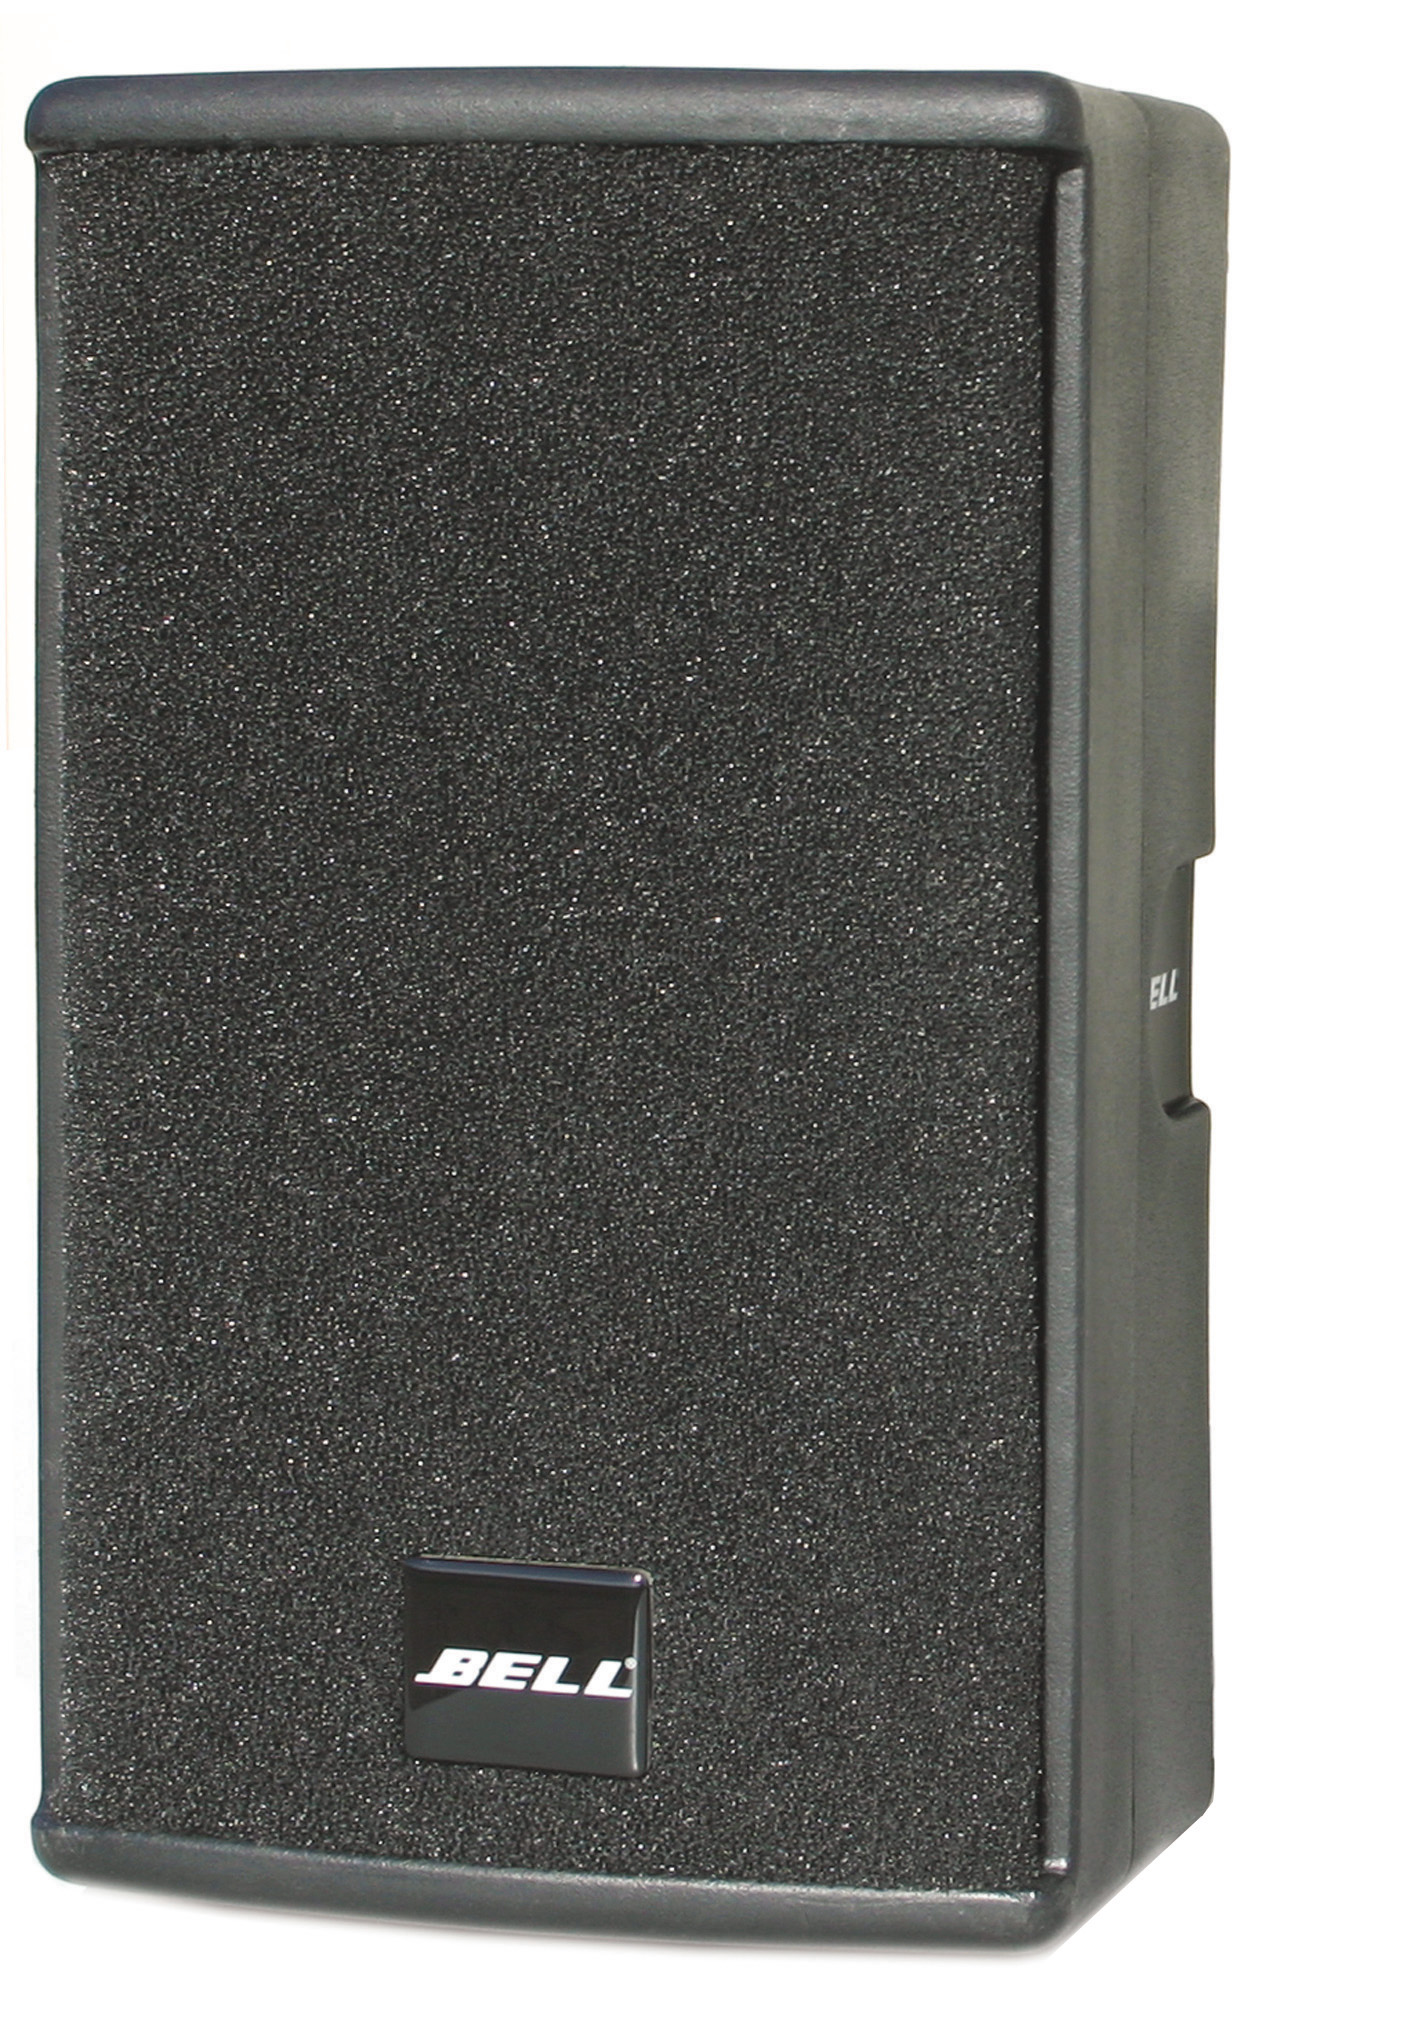 德國贝尔BELL M12pro專業音響12寸音箱全頻音箱舞台音響酒店音響會議音響娛樂音響酒吧音響高端音箱产品图